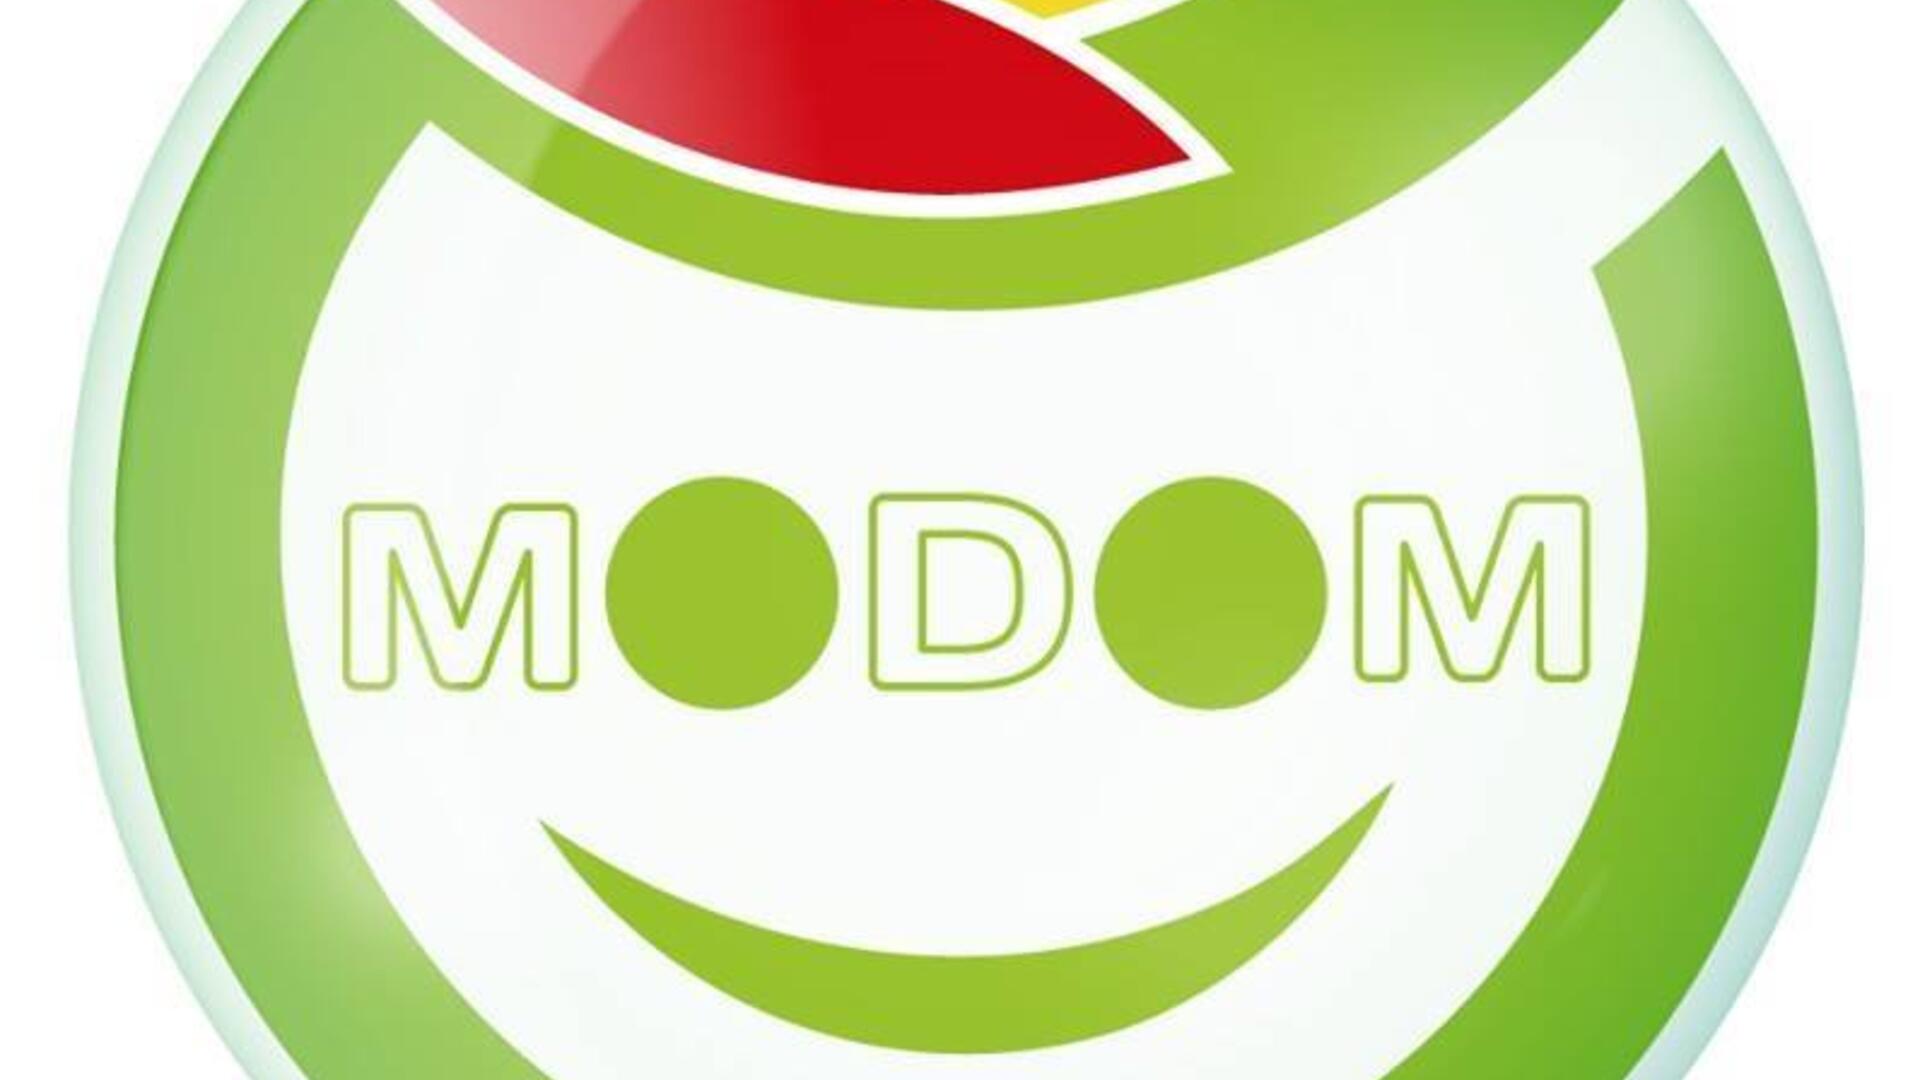 Logo of MODOM